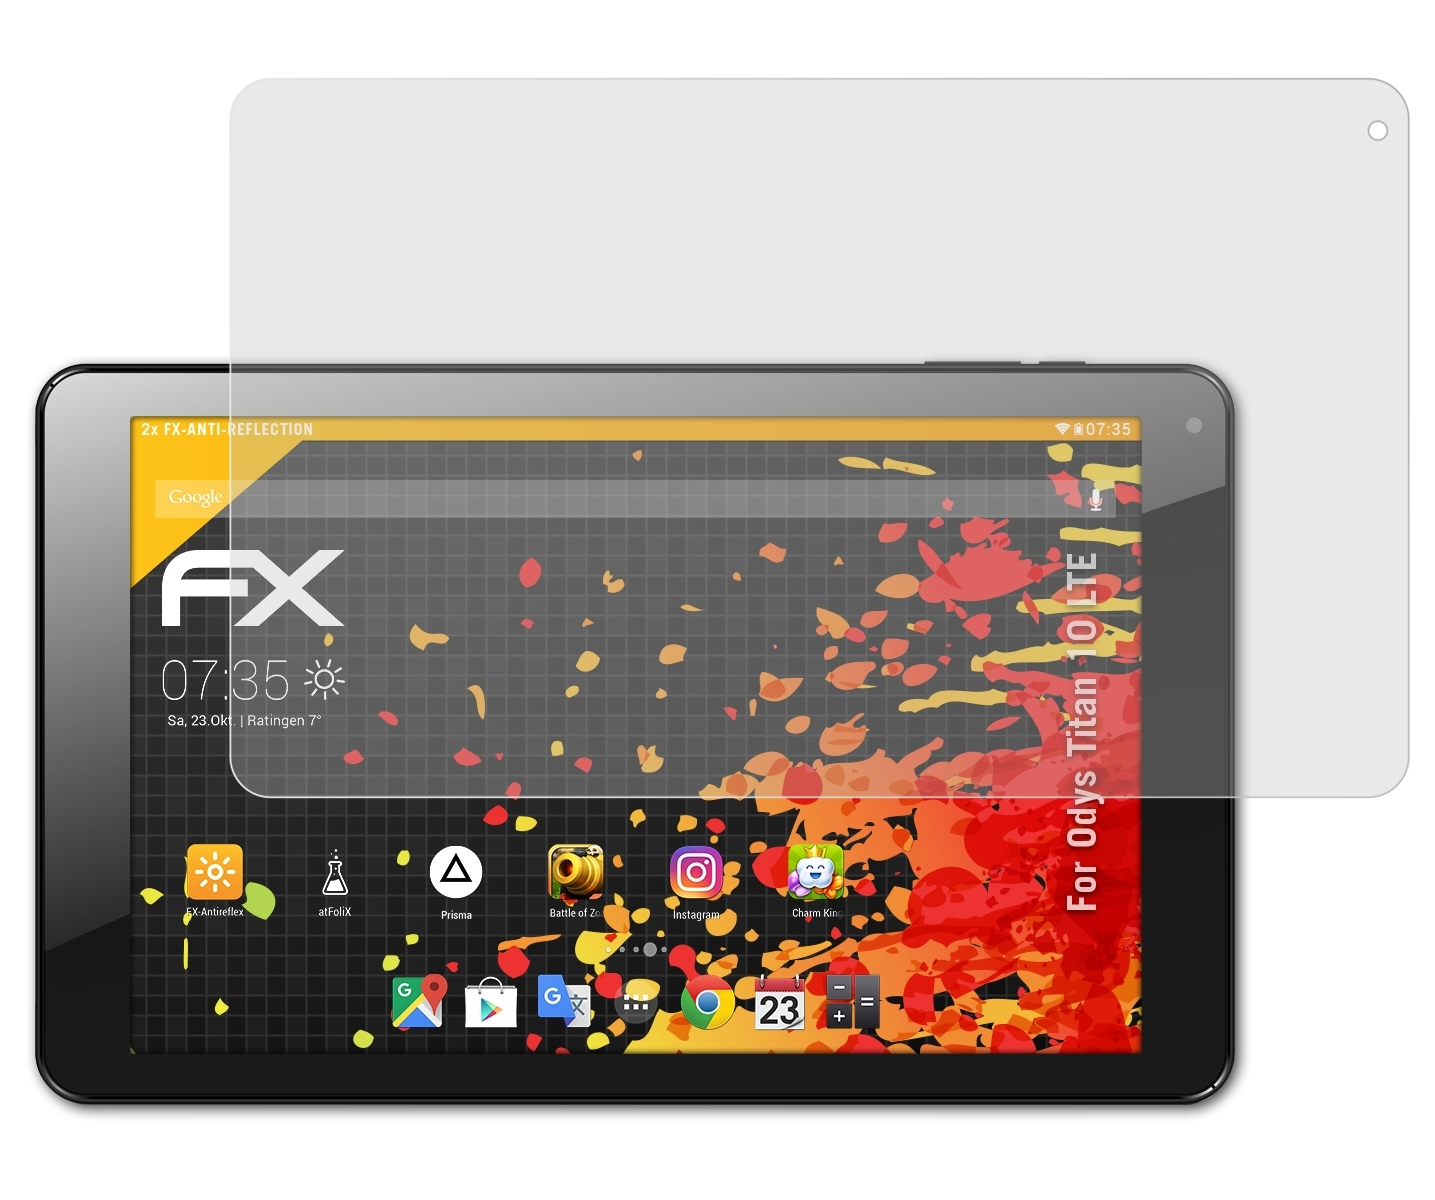 Odys FX-Antireflex 10 Titan Displayschutz(für 2x ATFOLIX LTE)